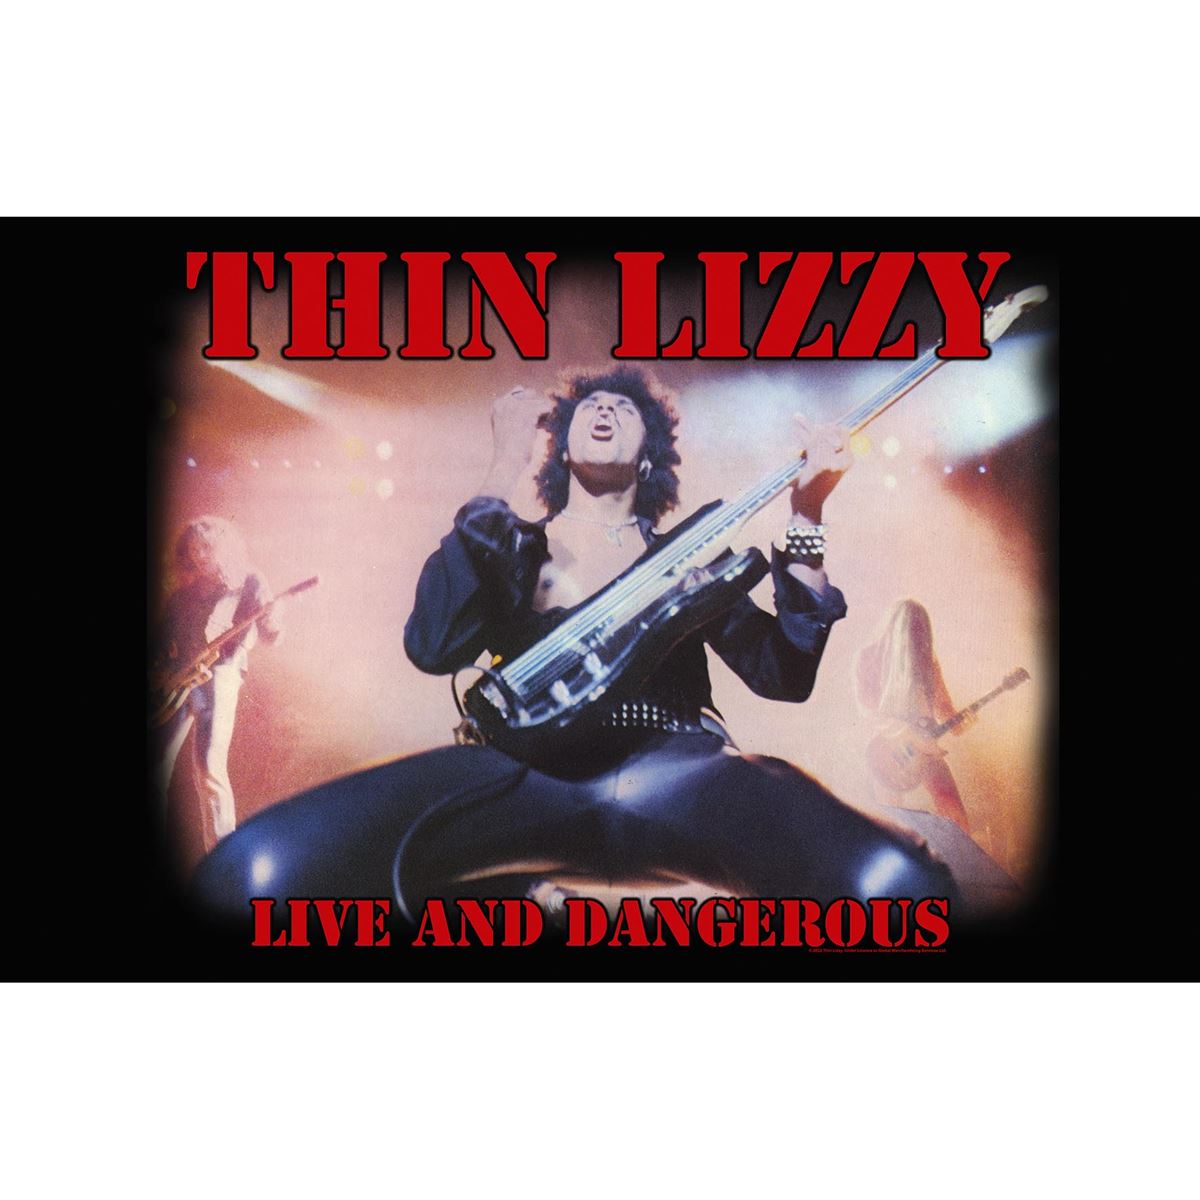 Thin Lizzy - Premium Textile Poster Flag (Live And Dangerous) 104cm x 66cm